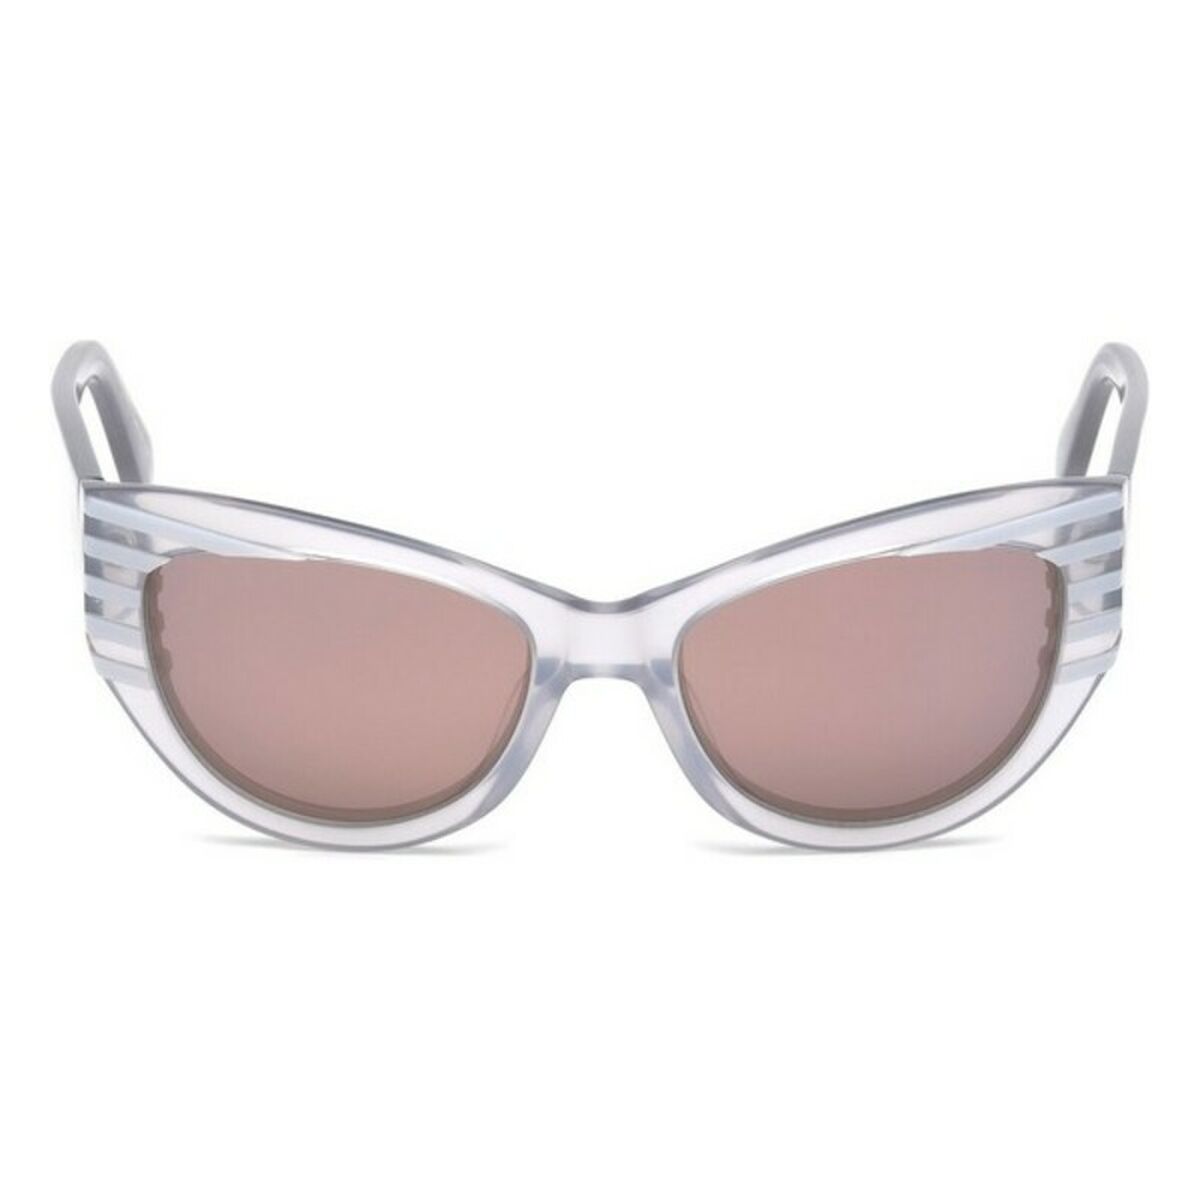 Ladies' Sunglasses Just Cavalli JC790S